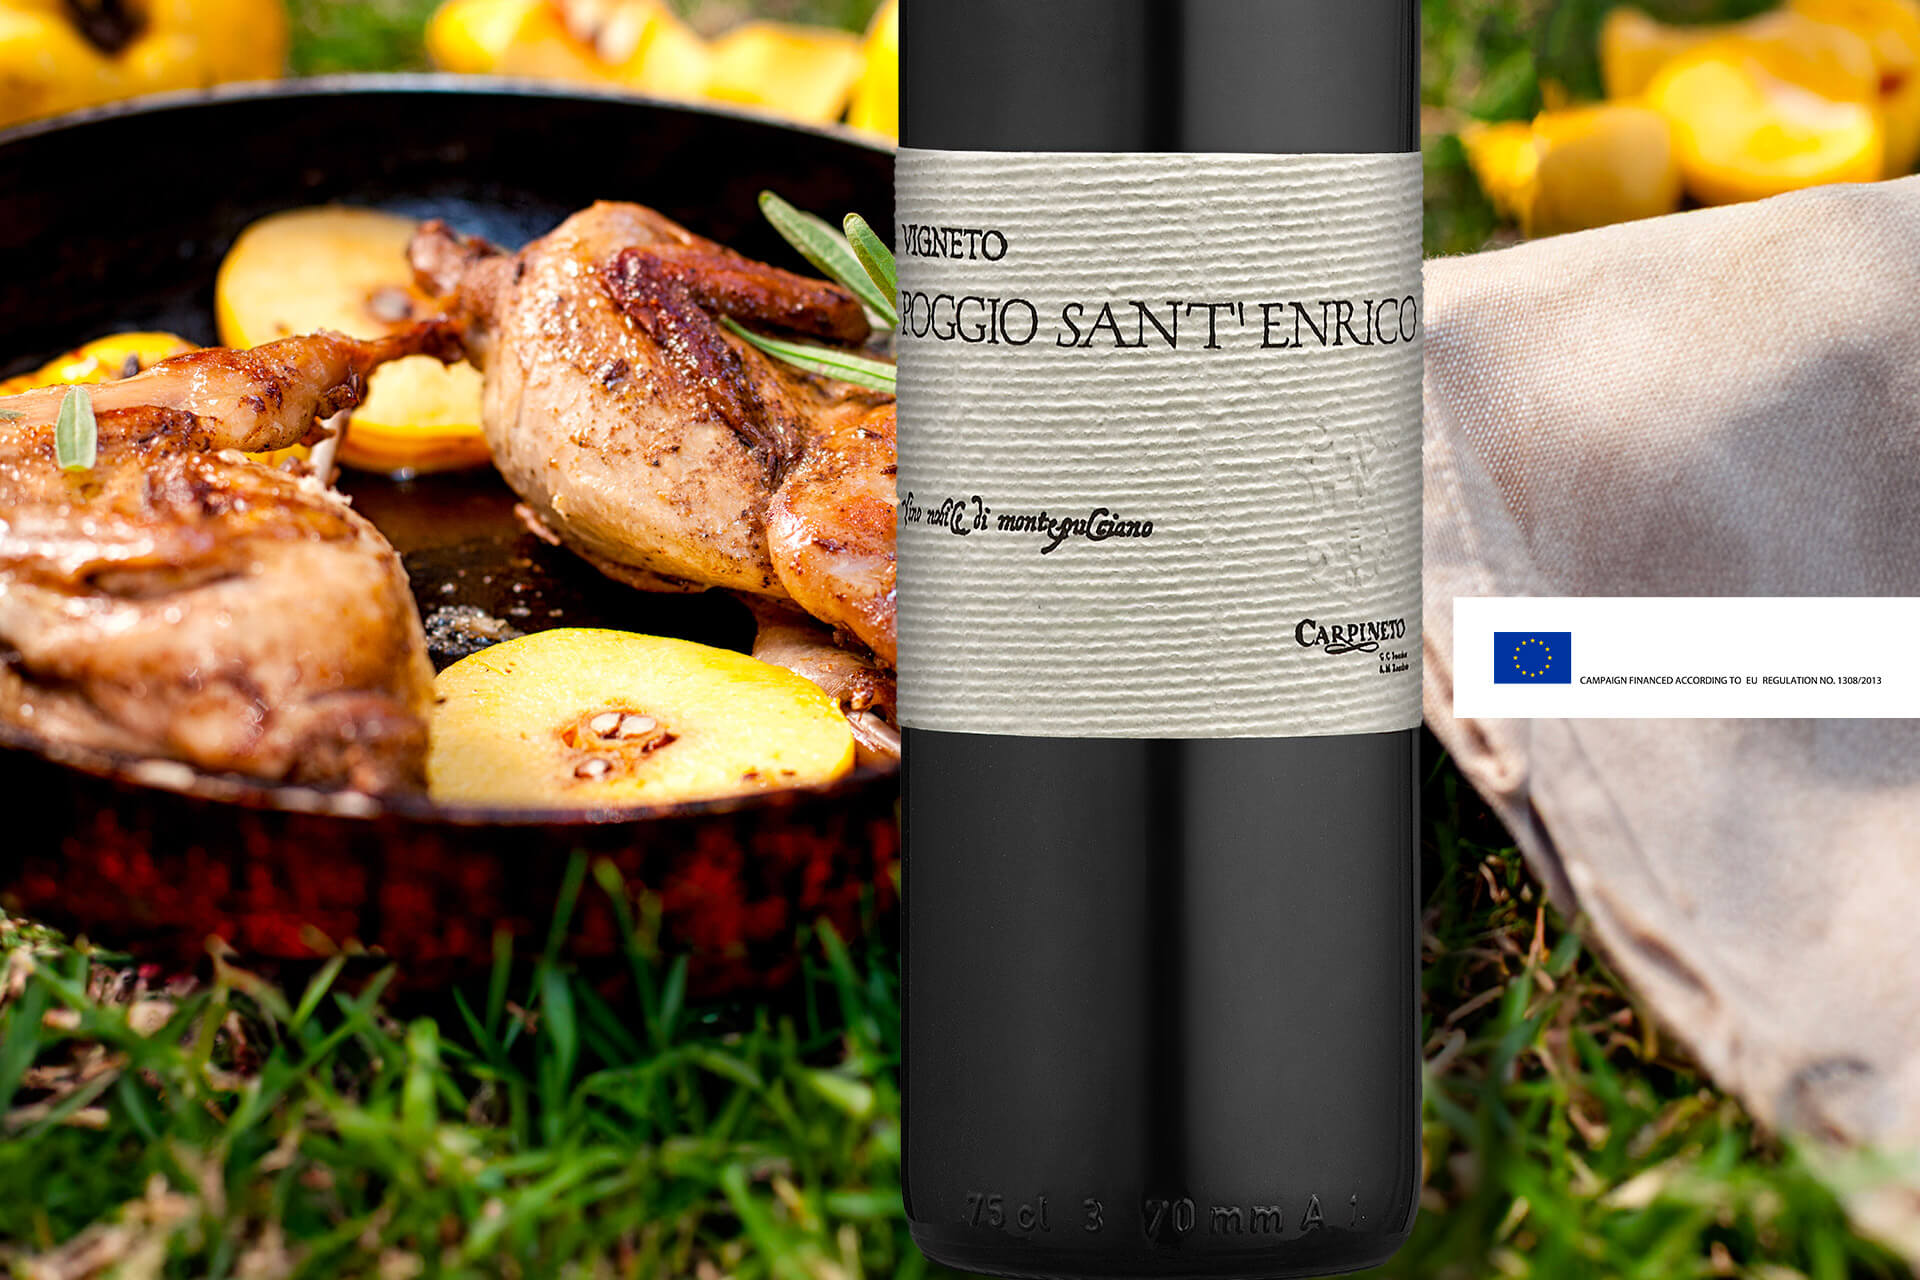 “Tuscan-style” stewed Guinea fowl recipe with Vino Nobile di Montepulciano Vigneto Poggio Sant'Enrico
